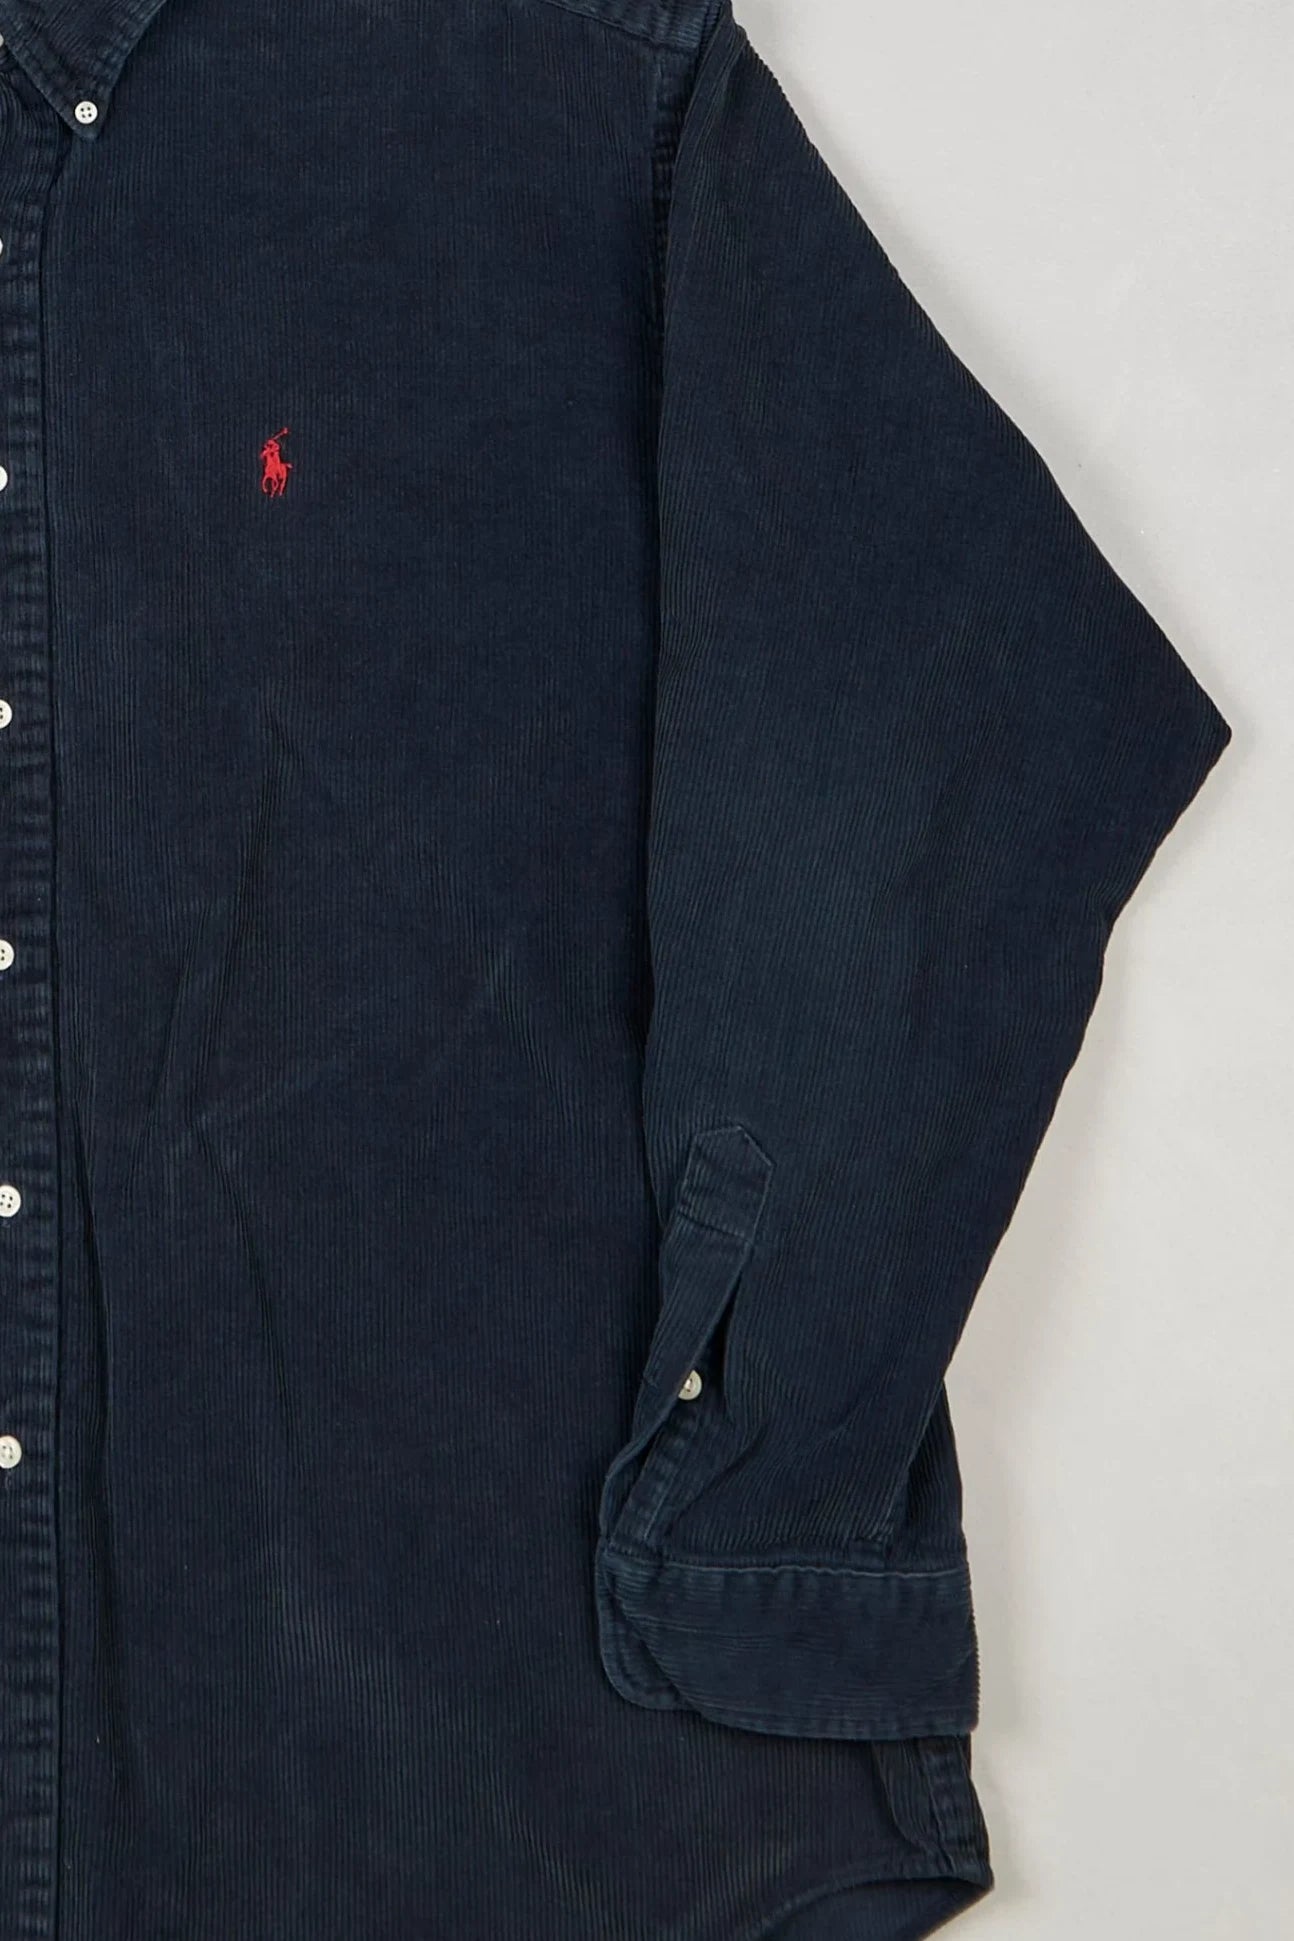 Ralph Lauren - Corduroy Shirt (XL) Right